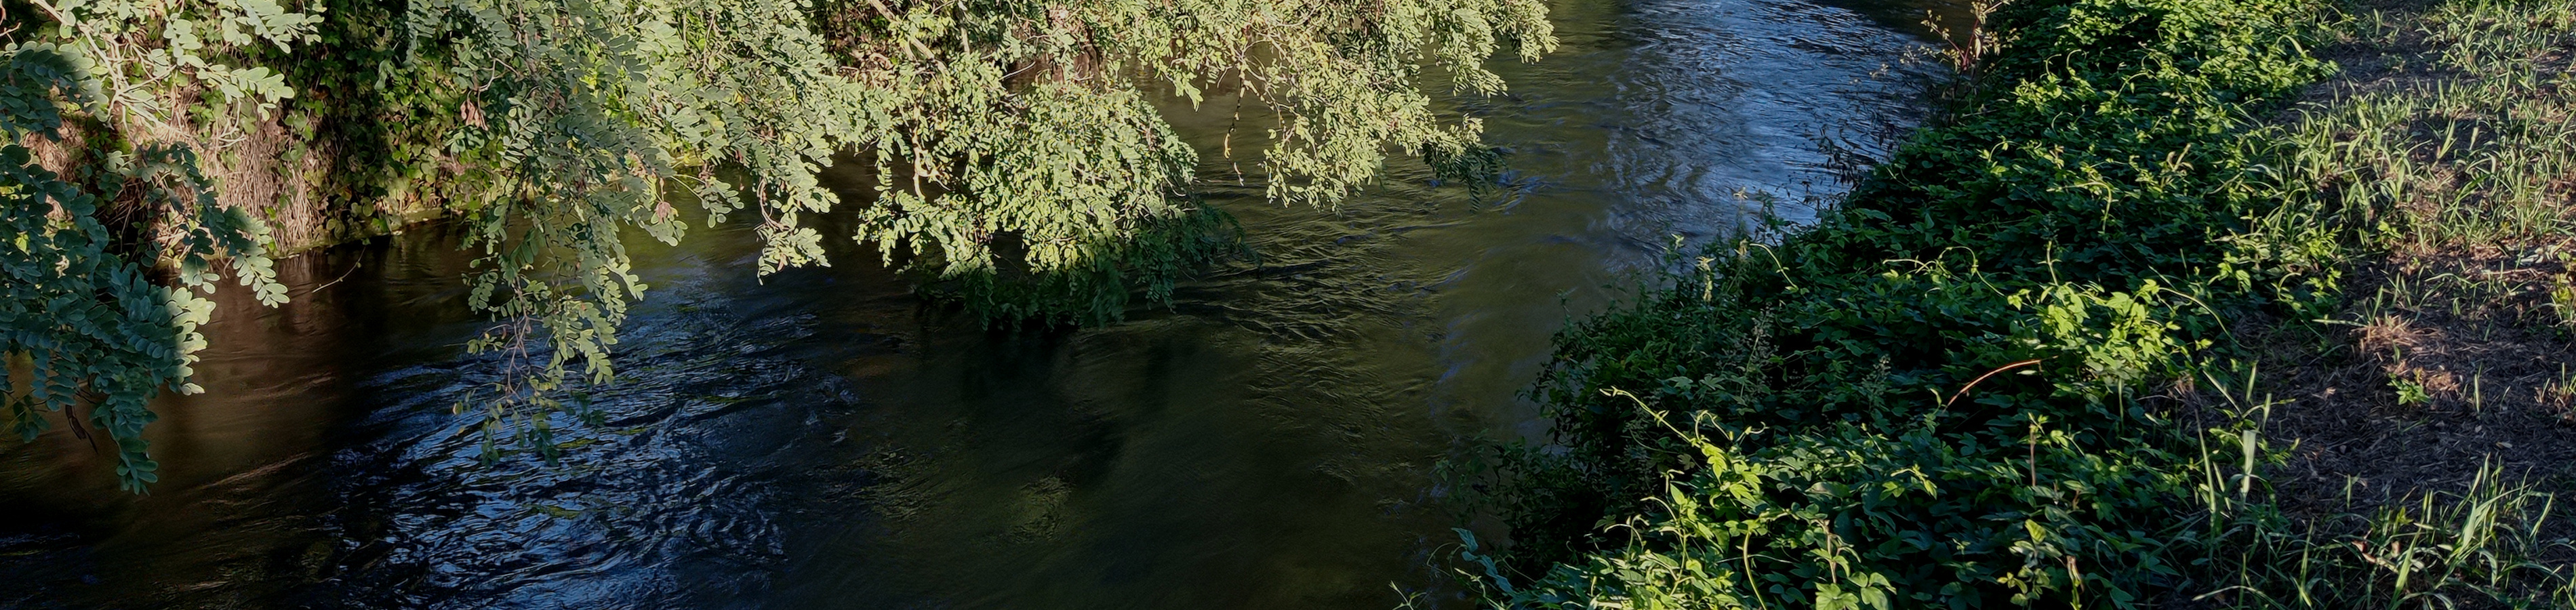 Il torrente Arbogna nei pressi di San Giorgio